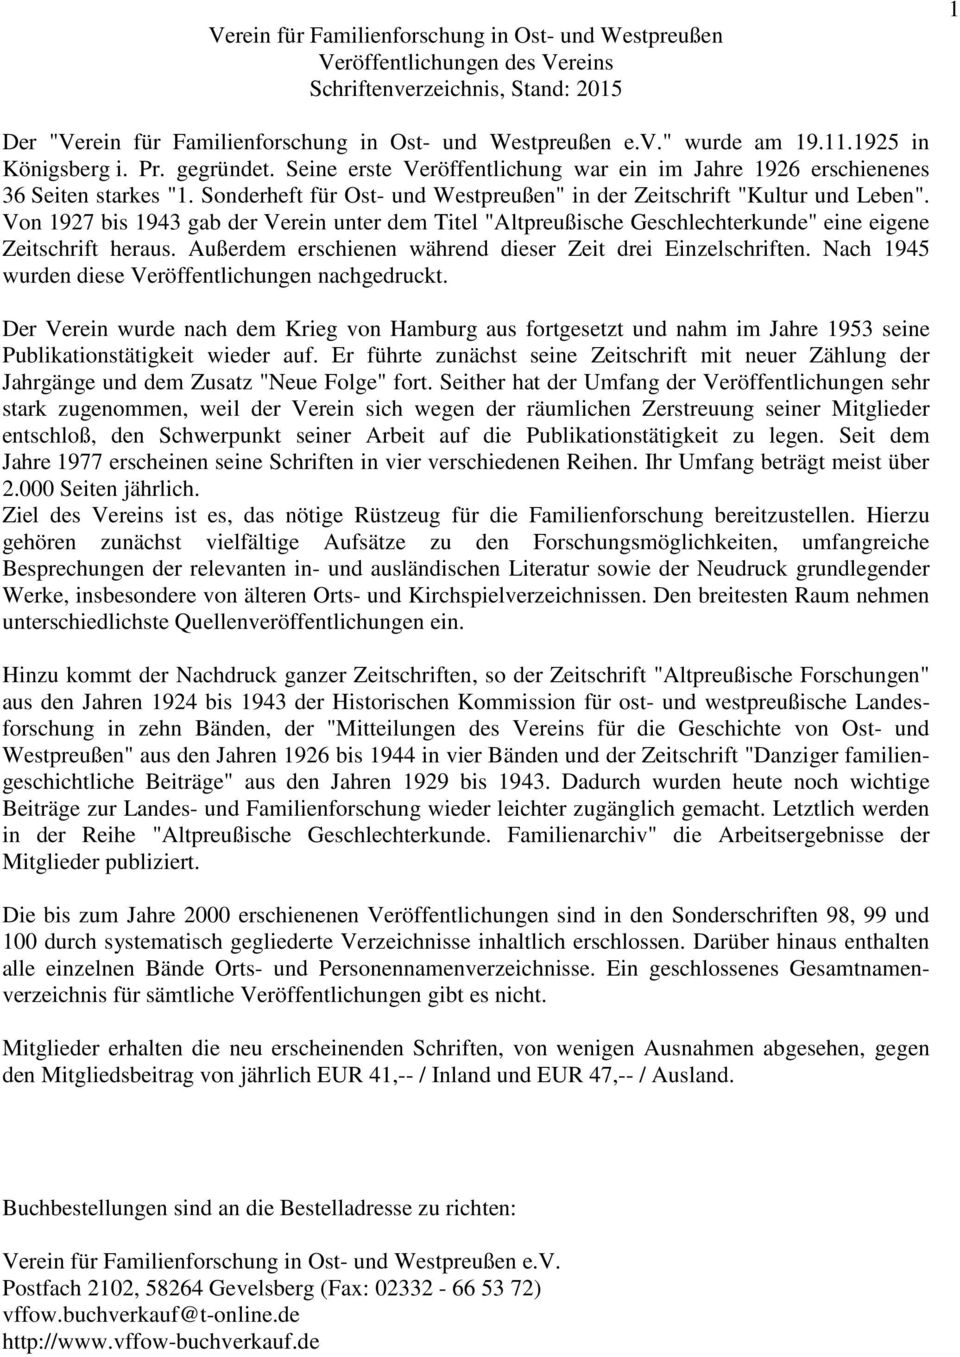 Von 1927 bis 1943 gab der Verein unter dem Titel "Altpreußische Geschlechterkunde" eine eigene Zeitschrift heraus. Außerdem erschienen während dieser Zeit drei Einzelschriften.